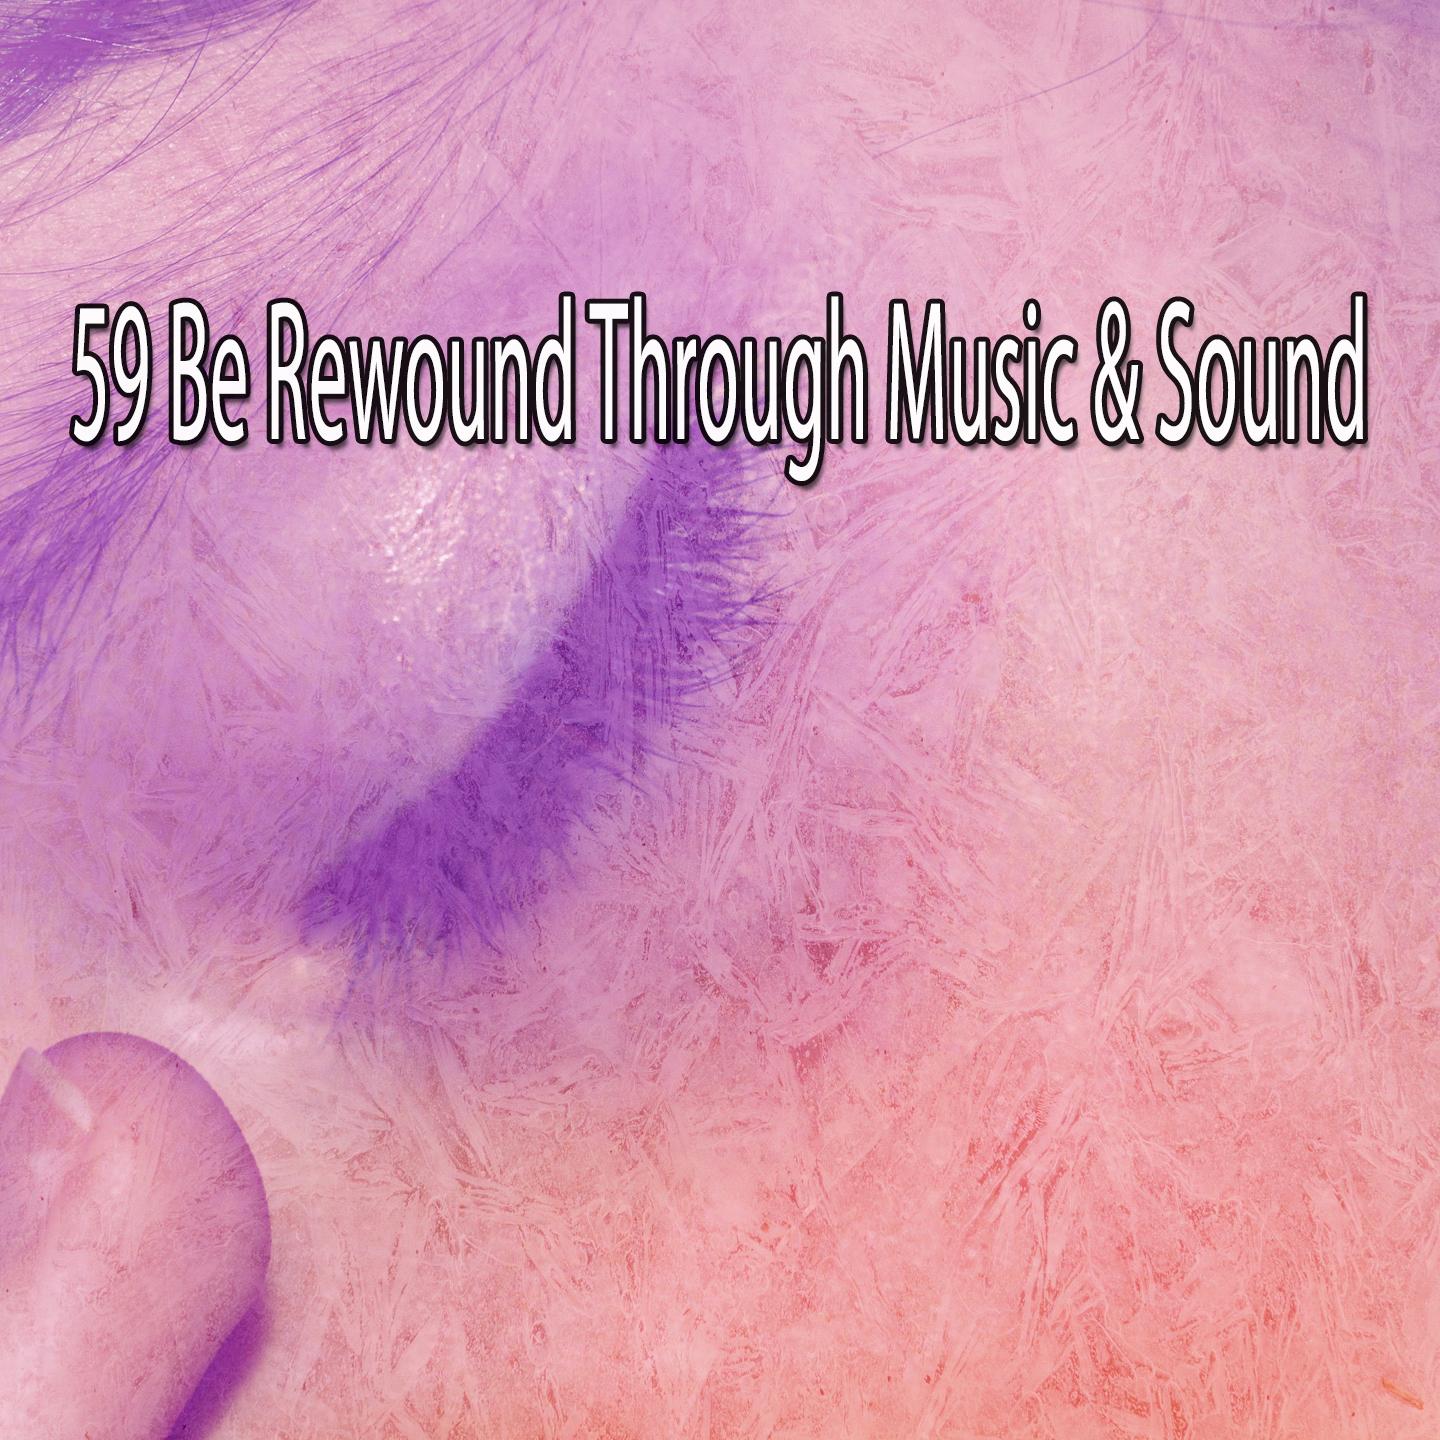 59 Be Rewound Through Music & Sound